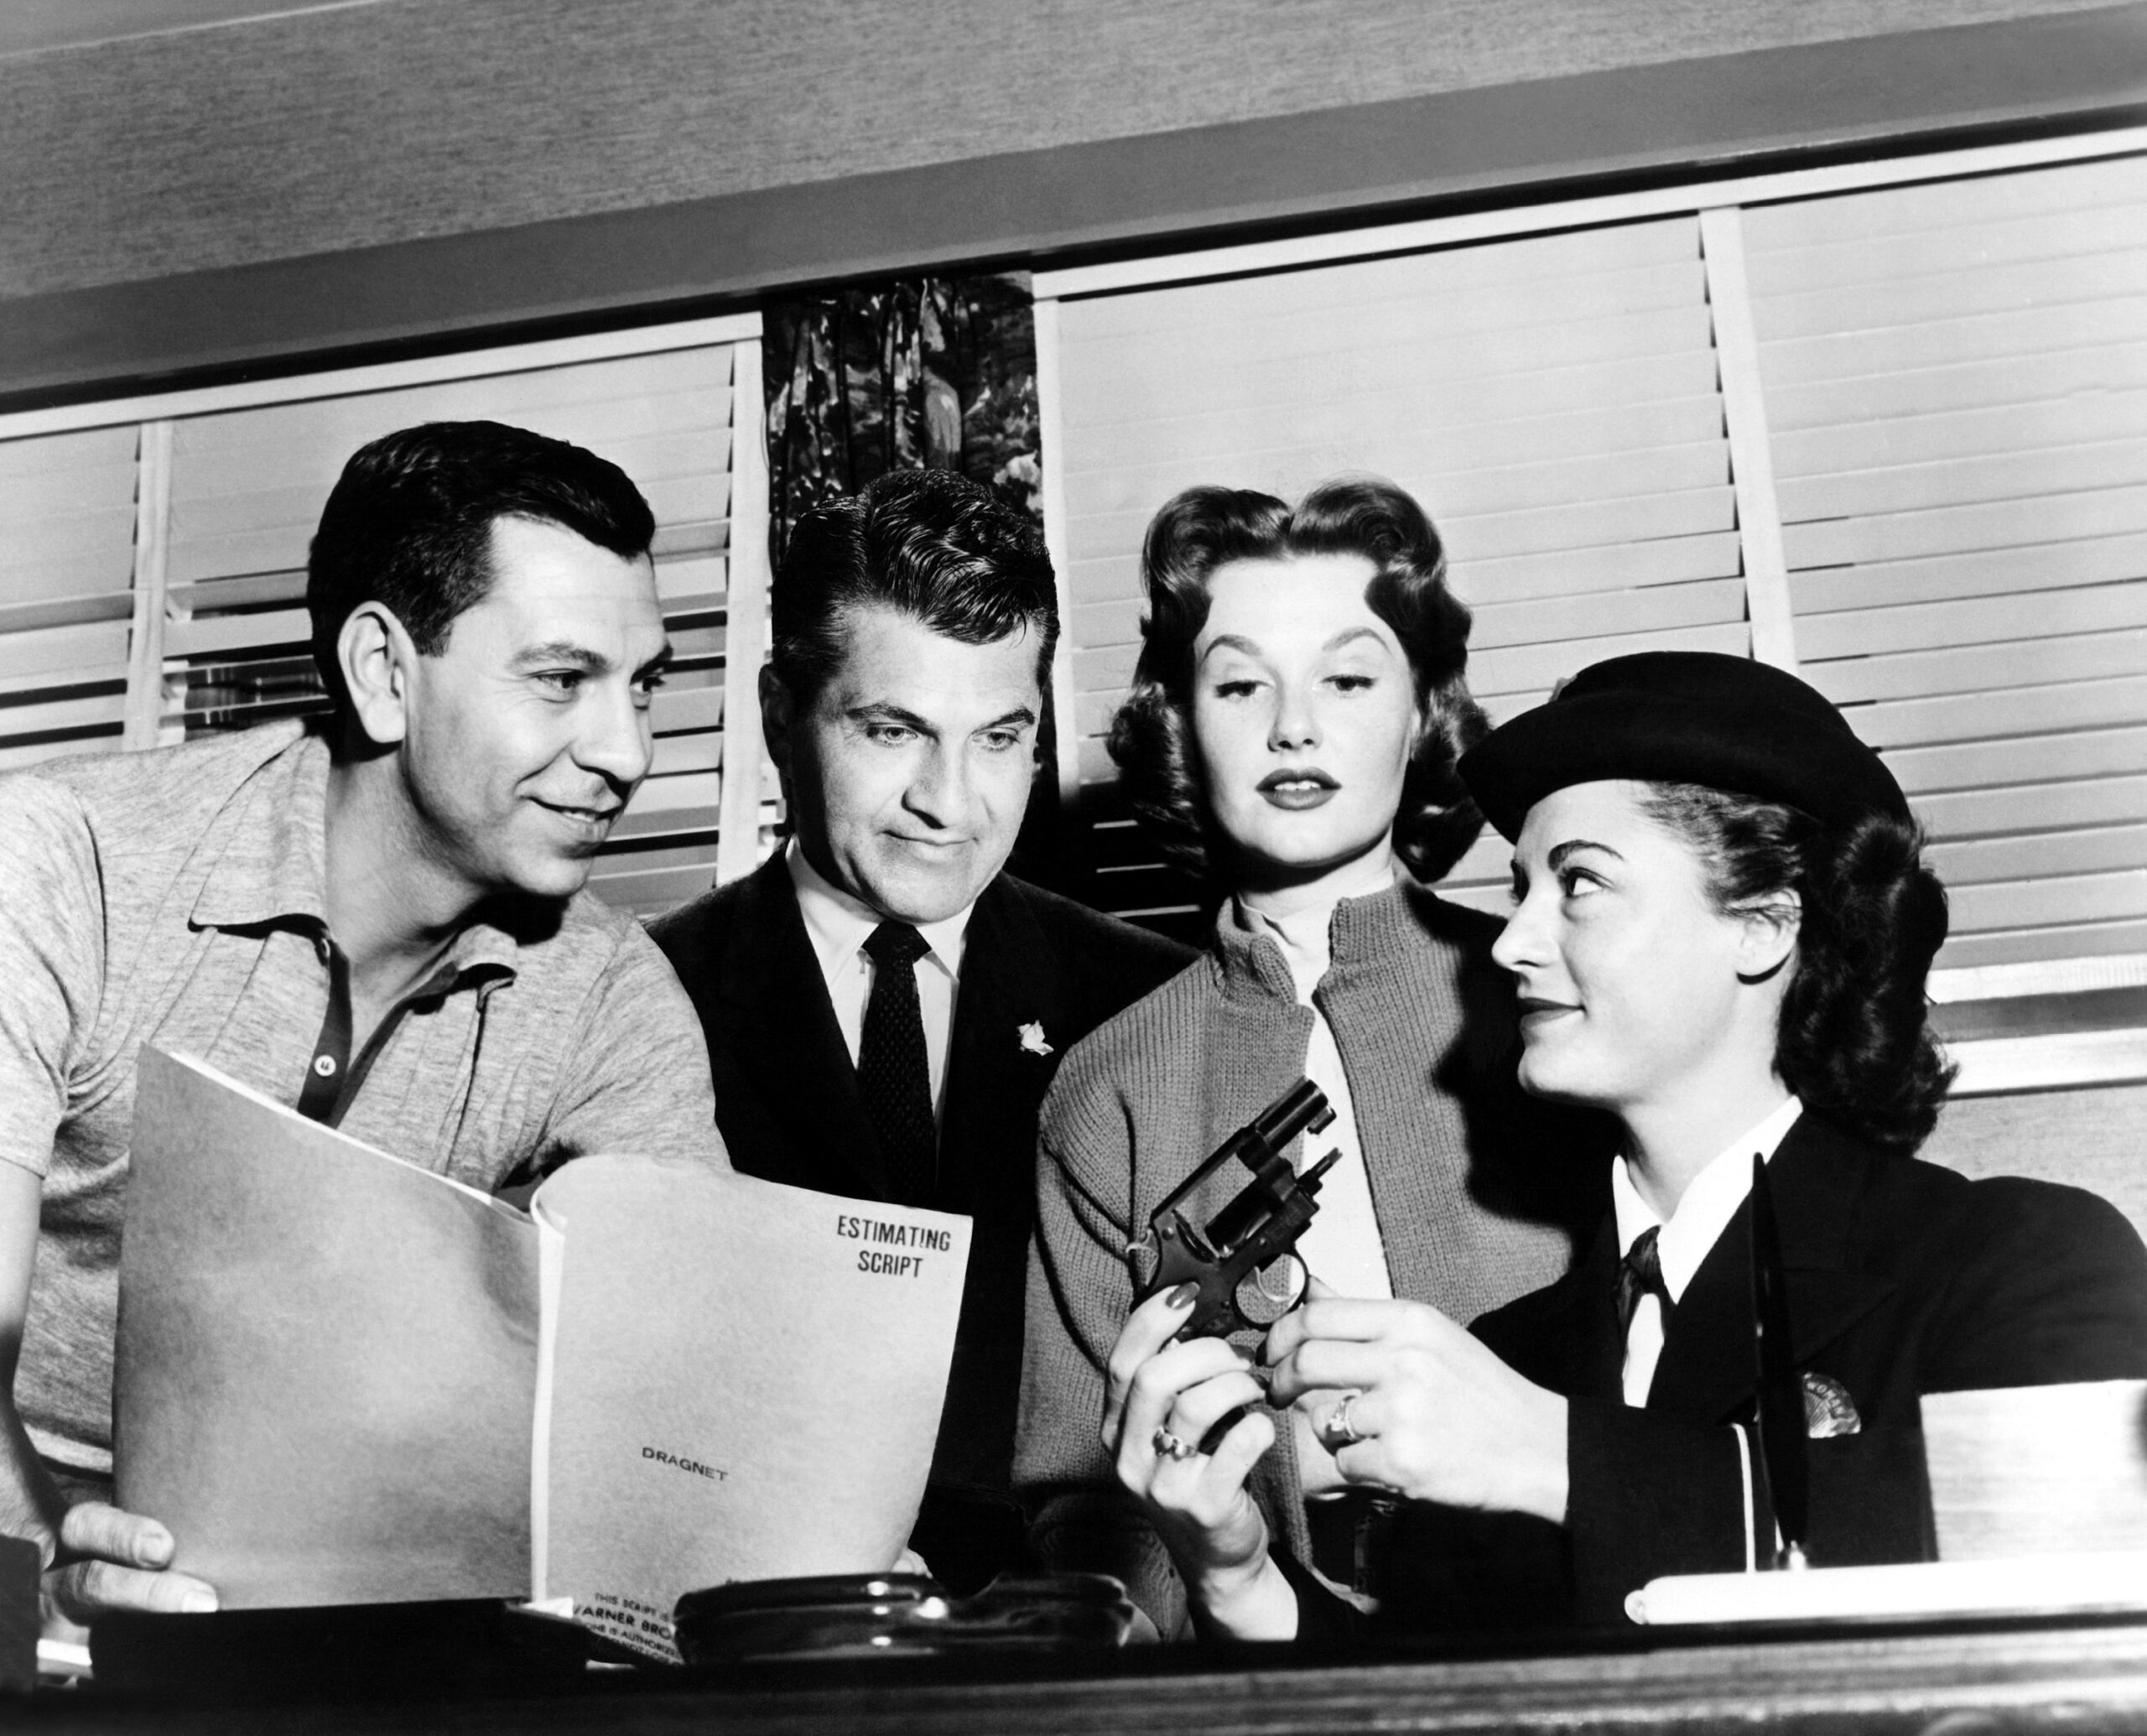 DRAGNET, from left, director and star Jack Webb, producer Stanley Meyer, Ann Robinson, technical advisor Margaret Groth, on-set, 1954